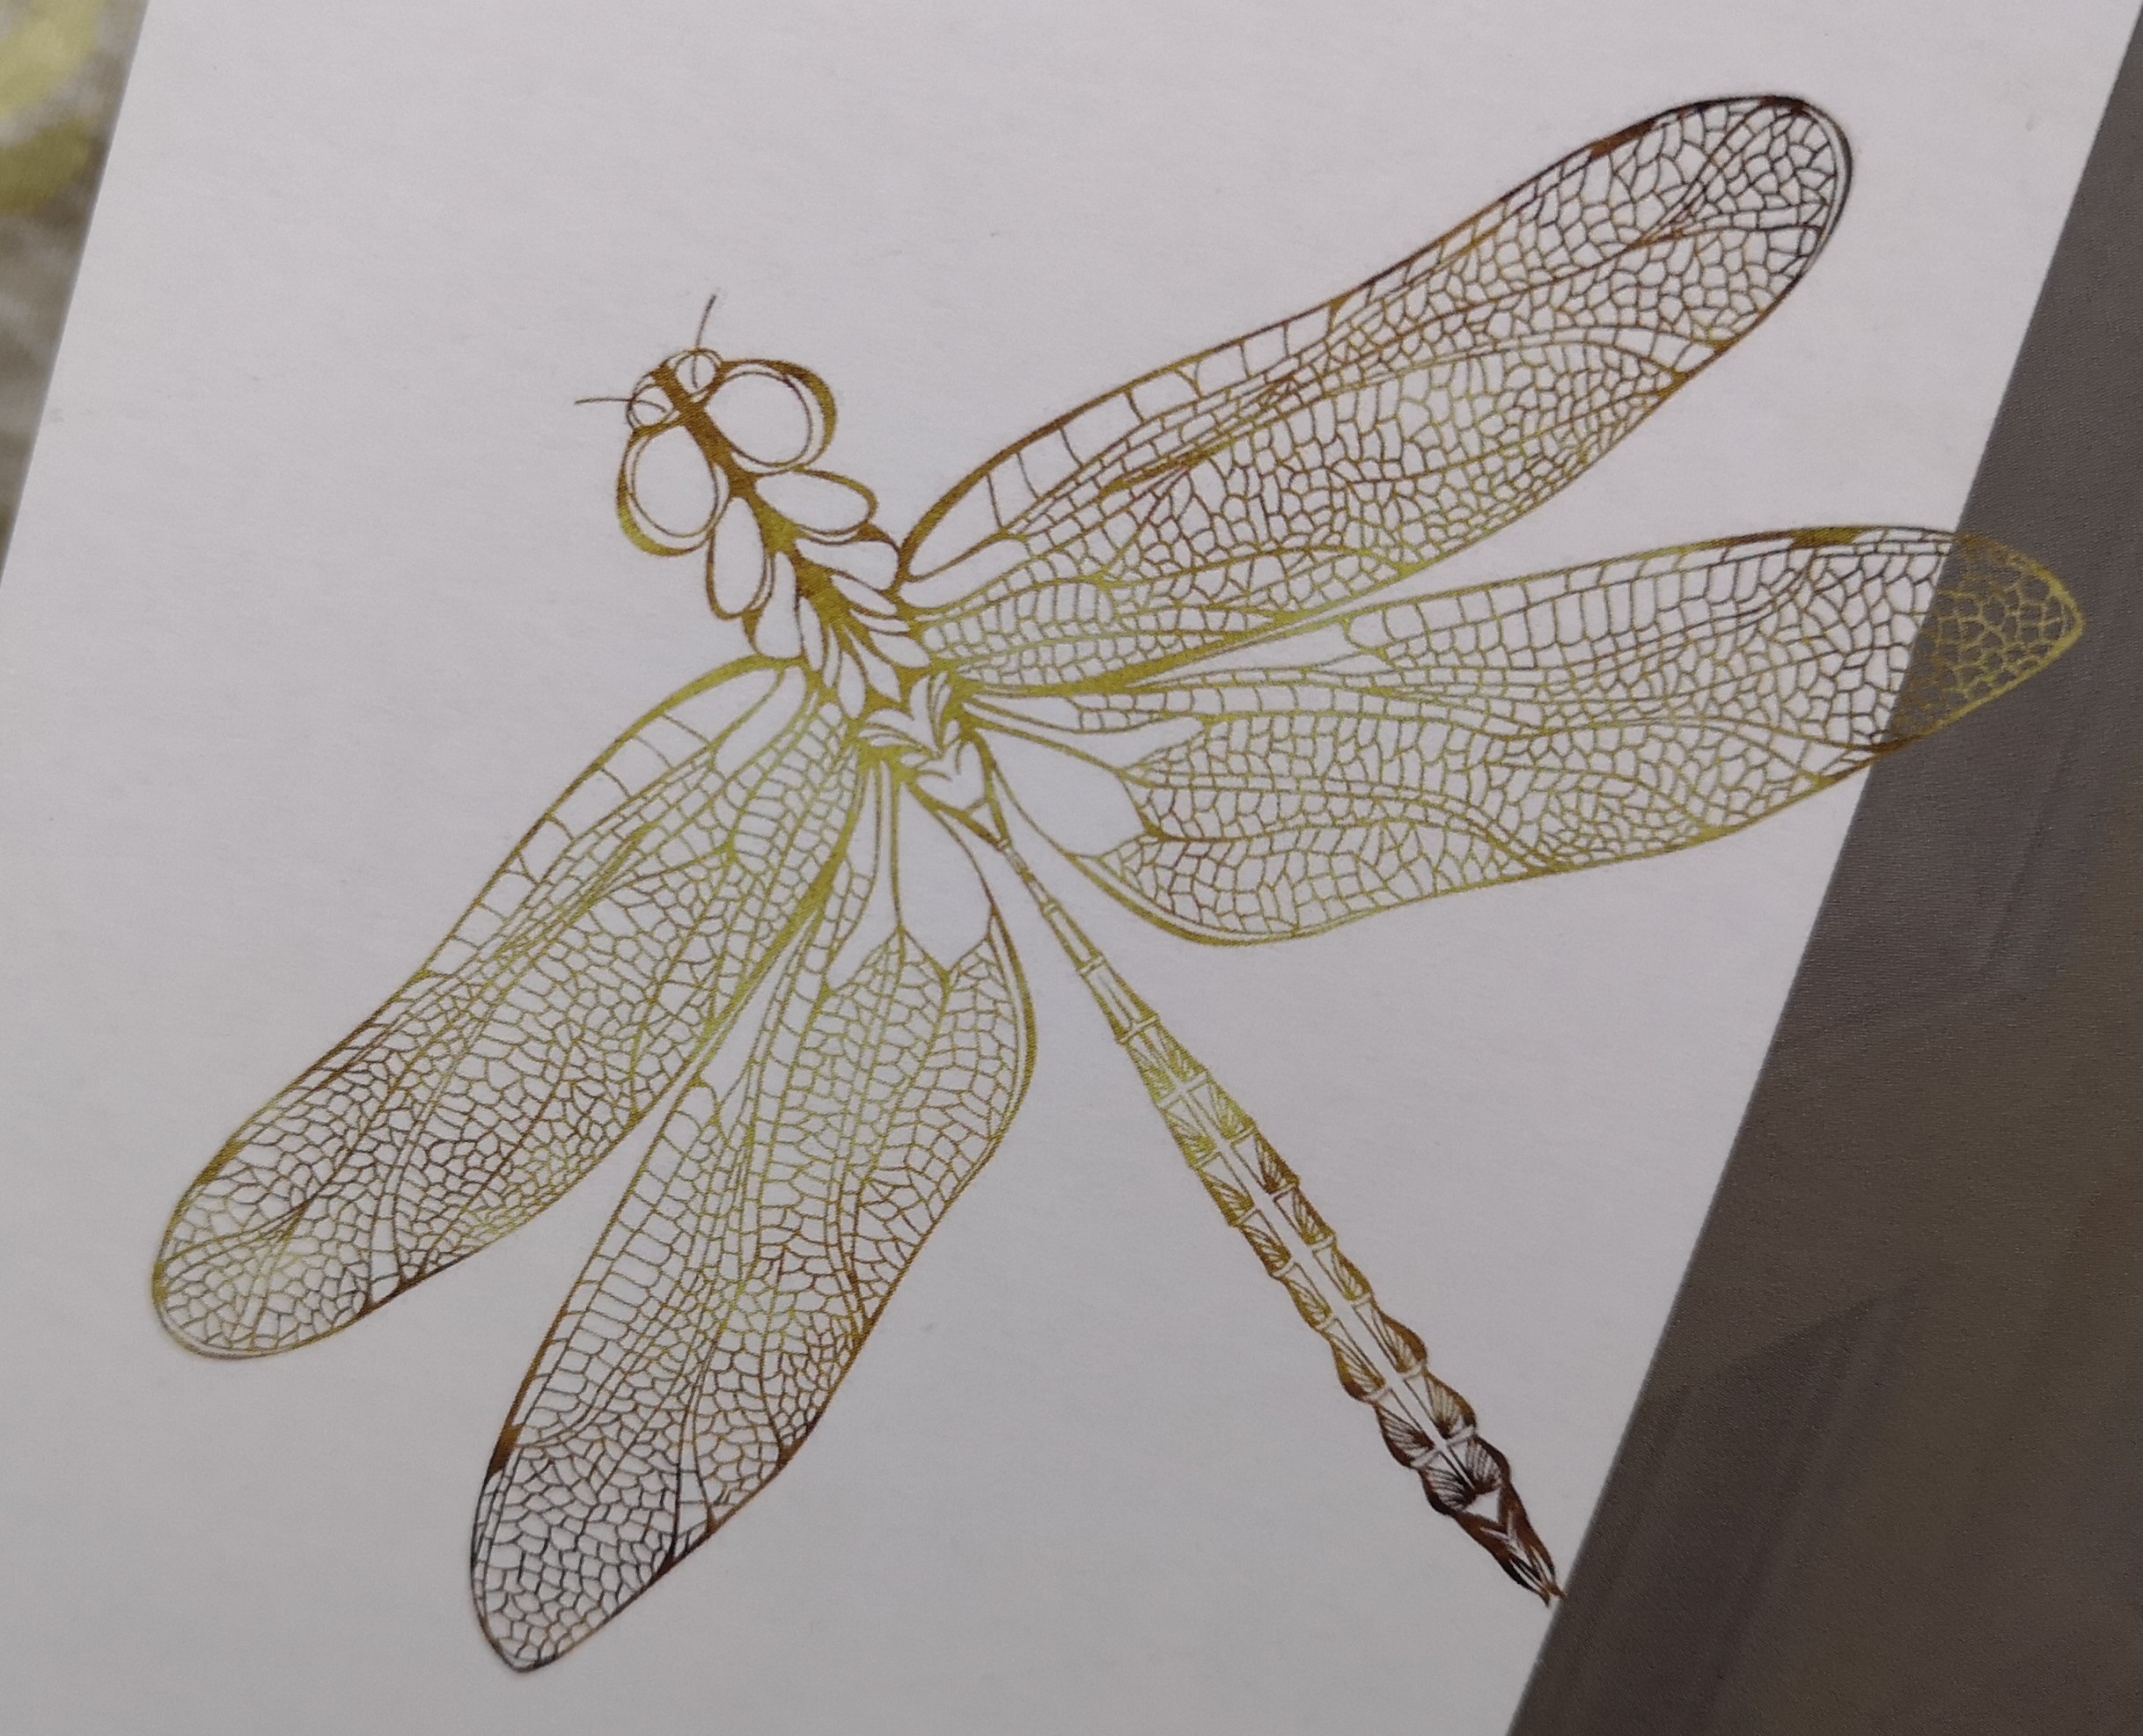 打印图 路径图, 2440*1220mm,注意蜻蜓翅膀和身子上每个线条上的颜色